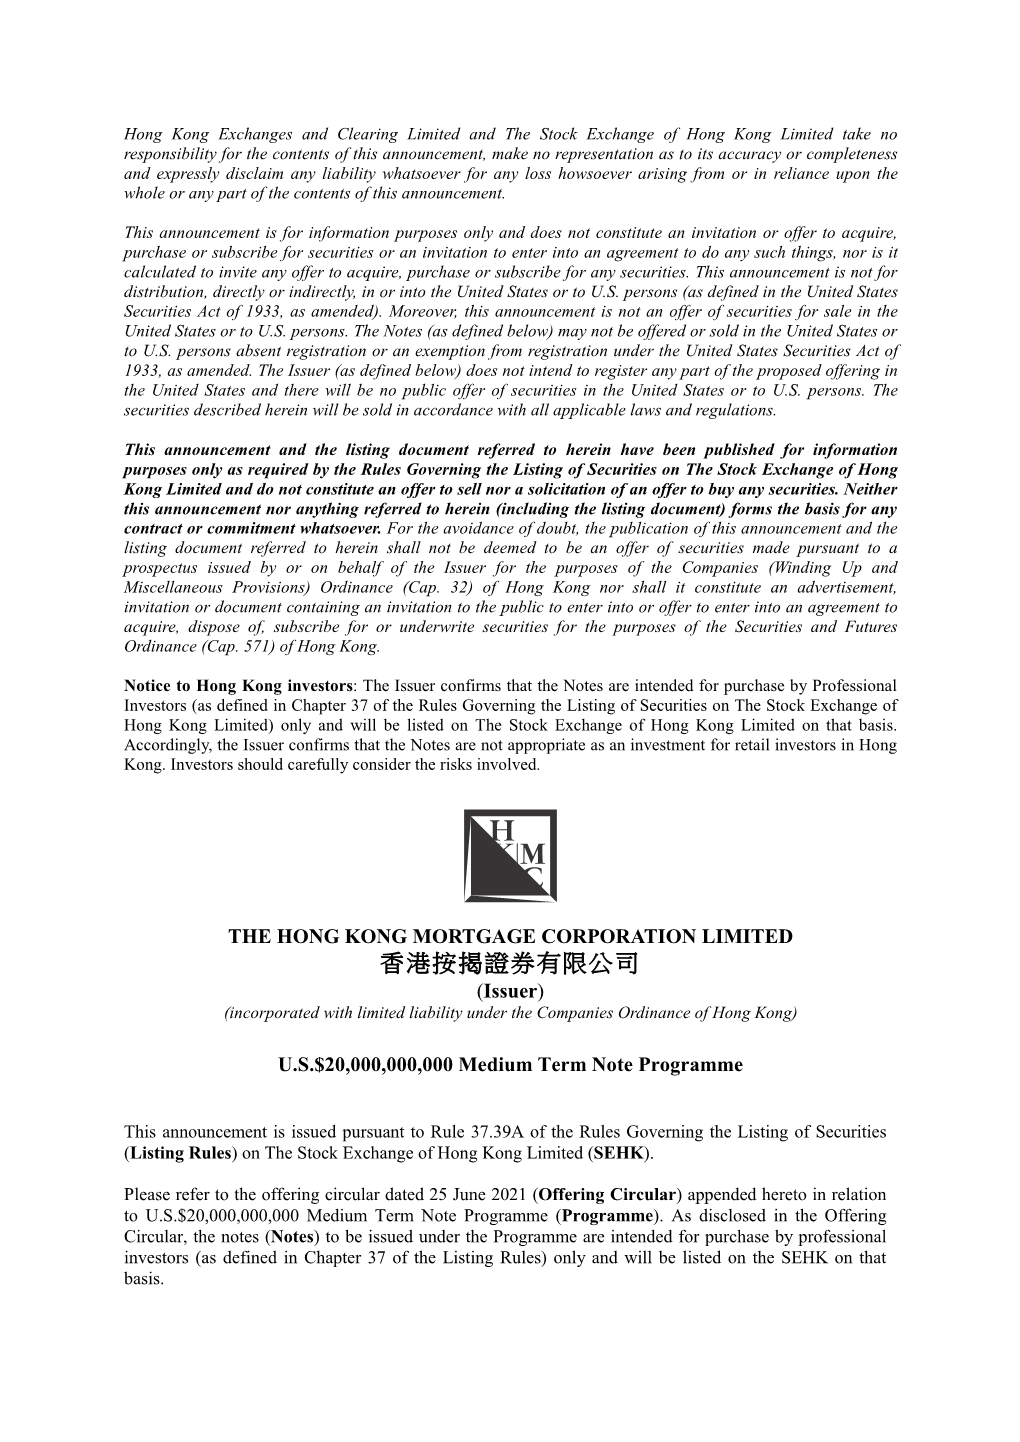 香港按揭證券有限公司 (Issuer) (Incorporated with Limited Liability Under the Companies Ordinance of Hong Kong)